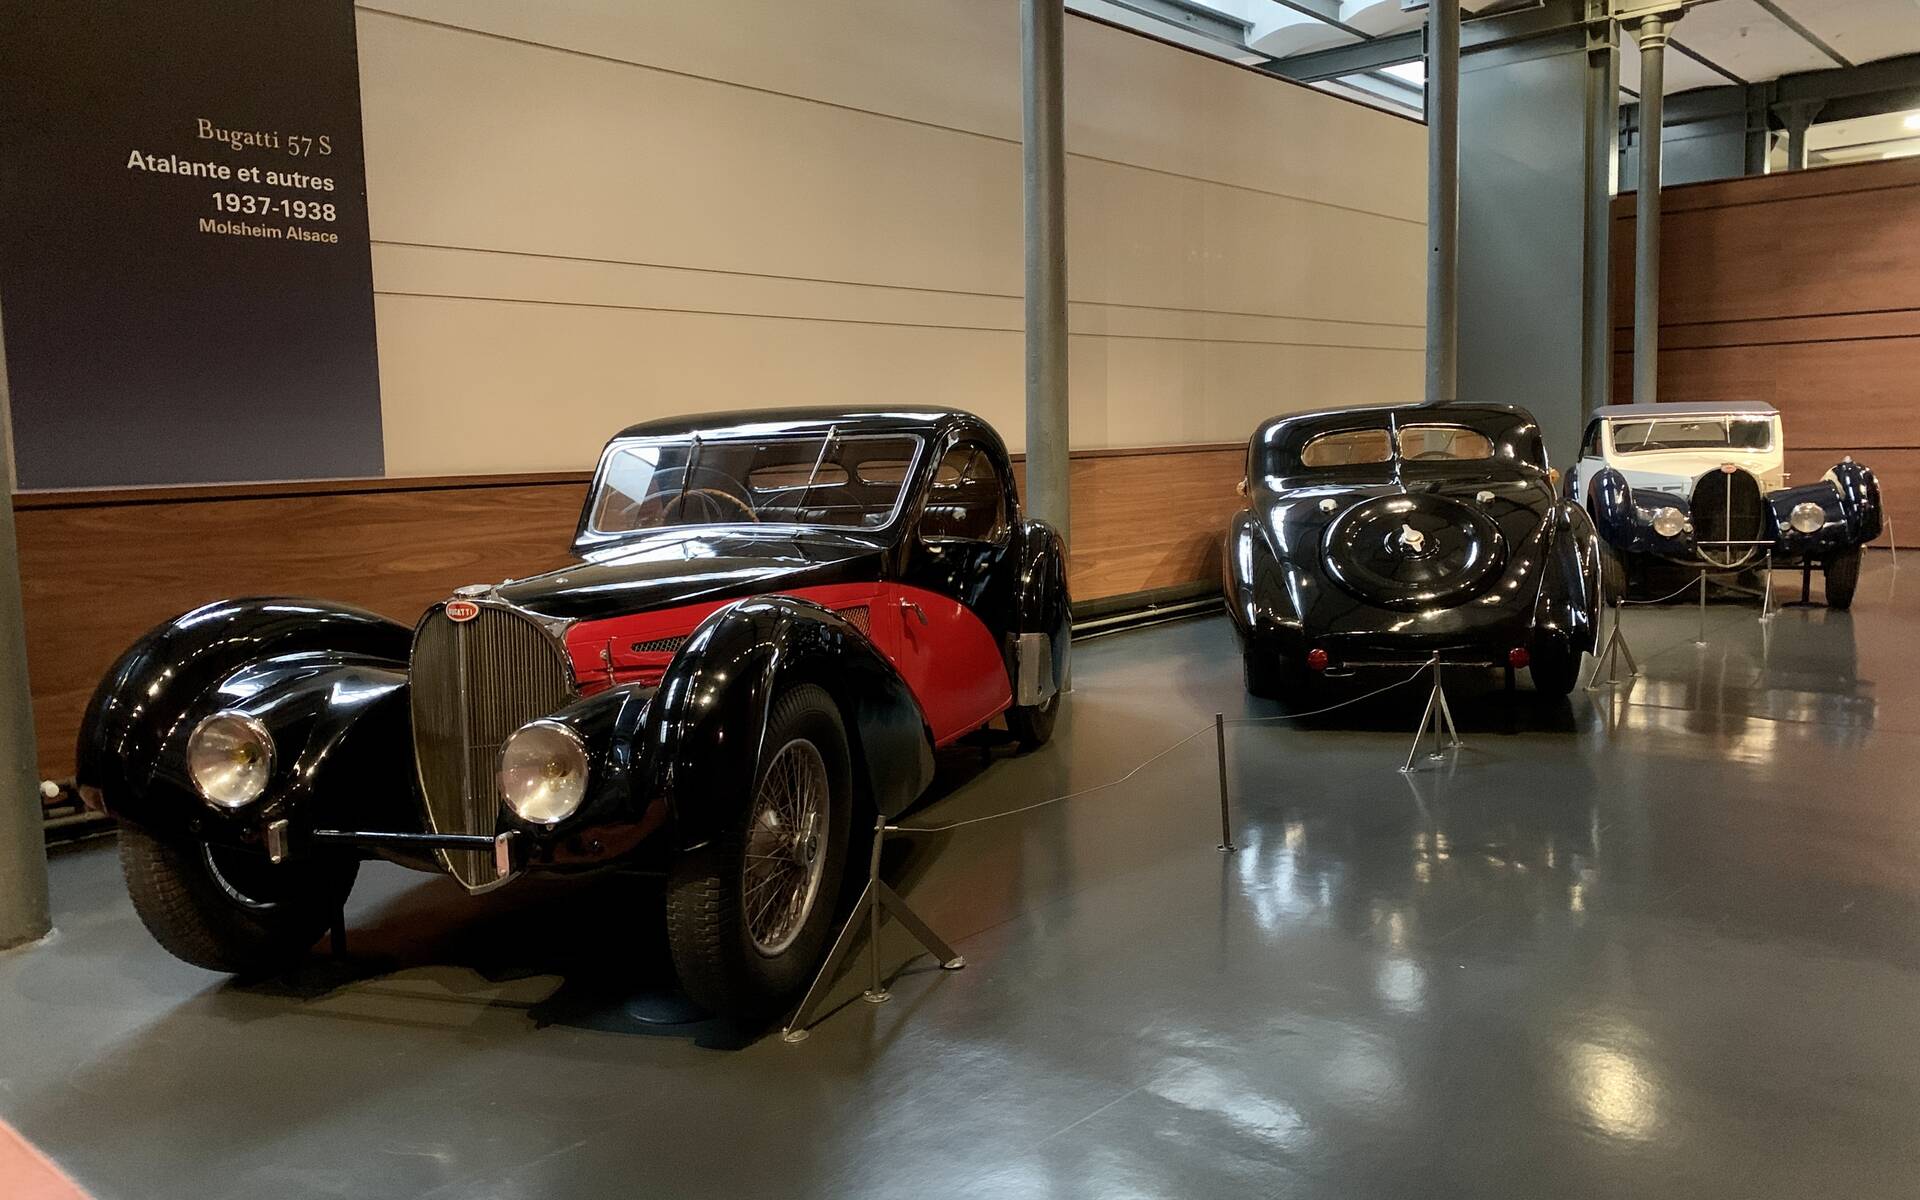 En photos : une centaine de Bugatti réunies dans un même musée 503109-en-photos-des-dizaines-de-bugatti-reunies-dans-un-meme-musee